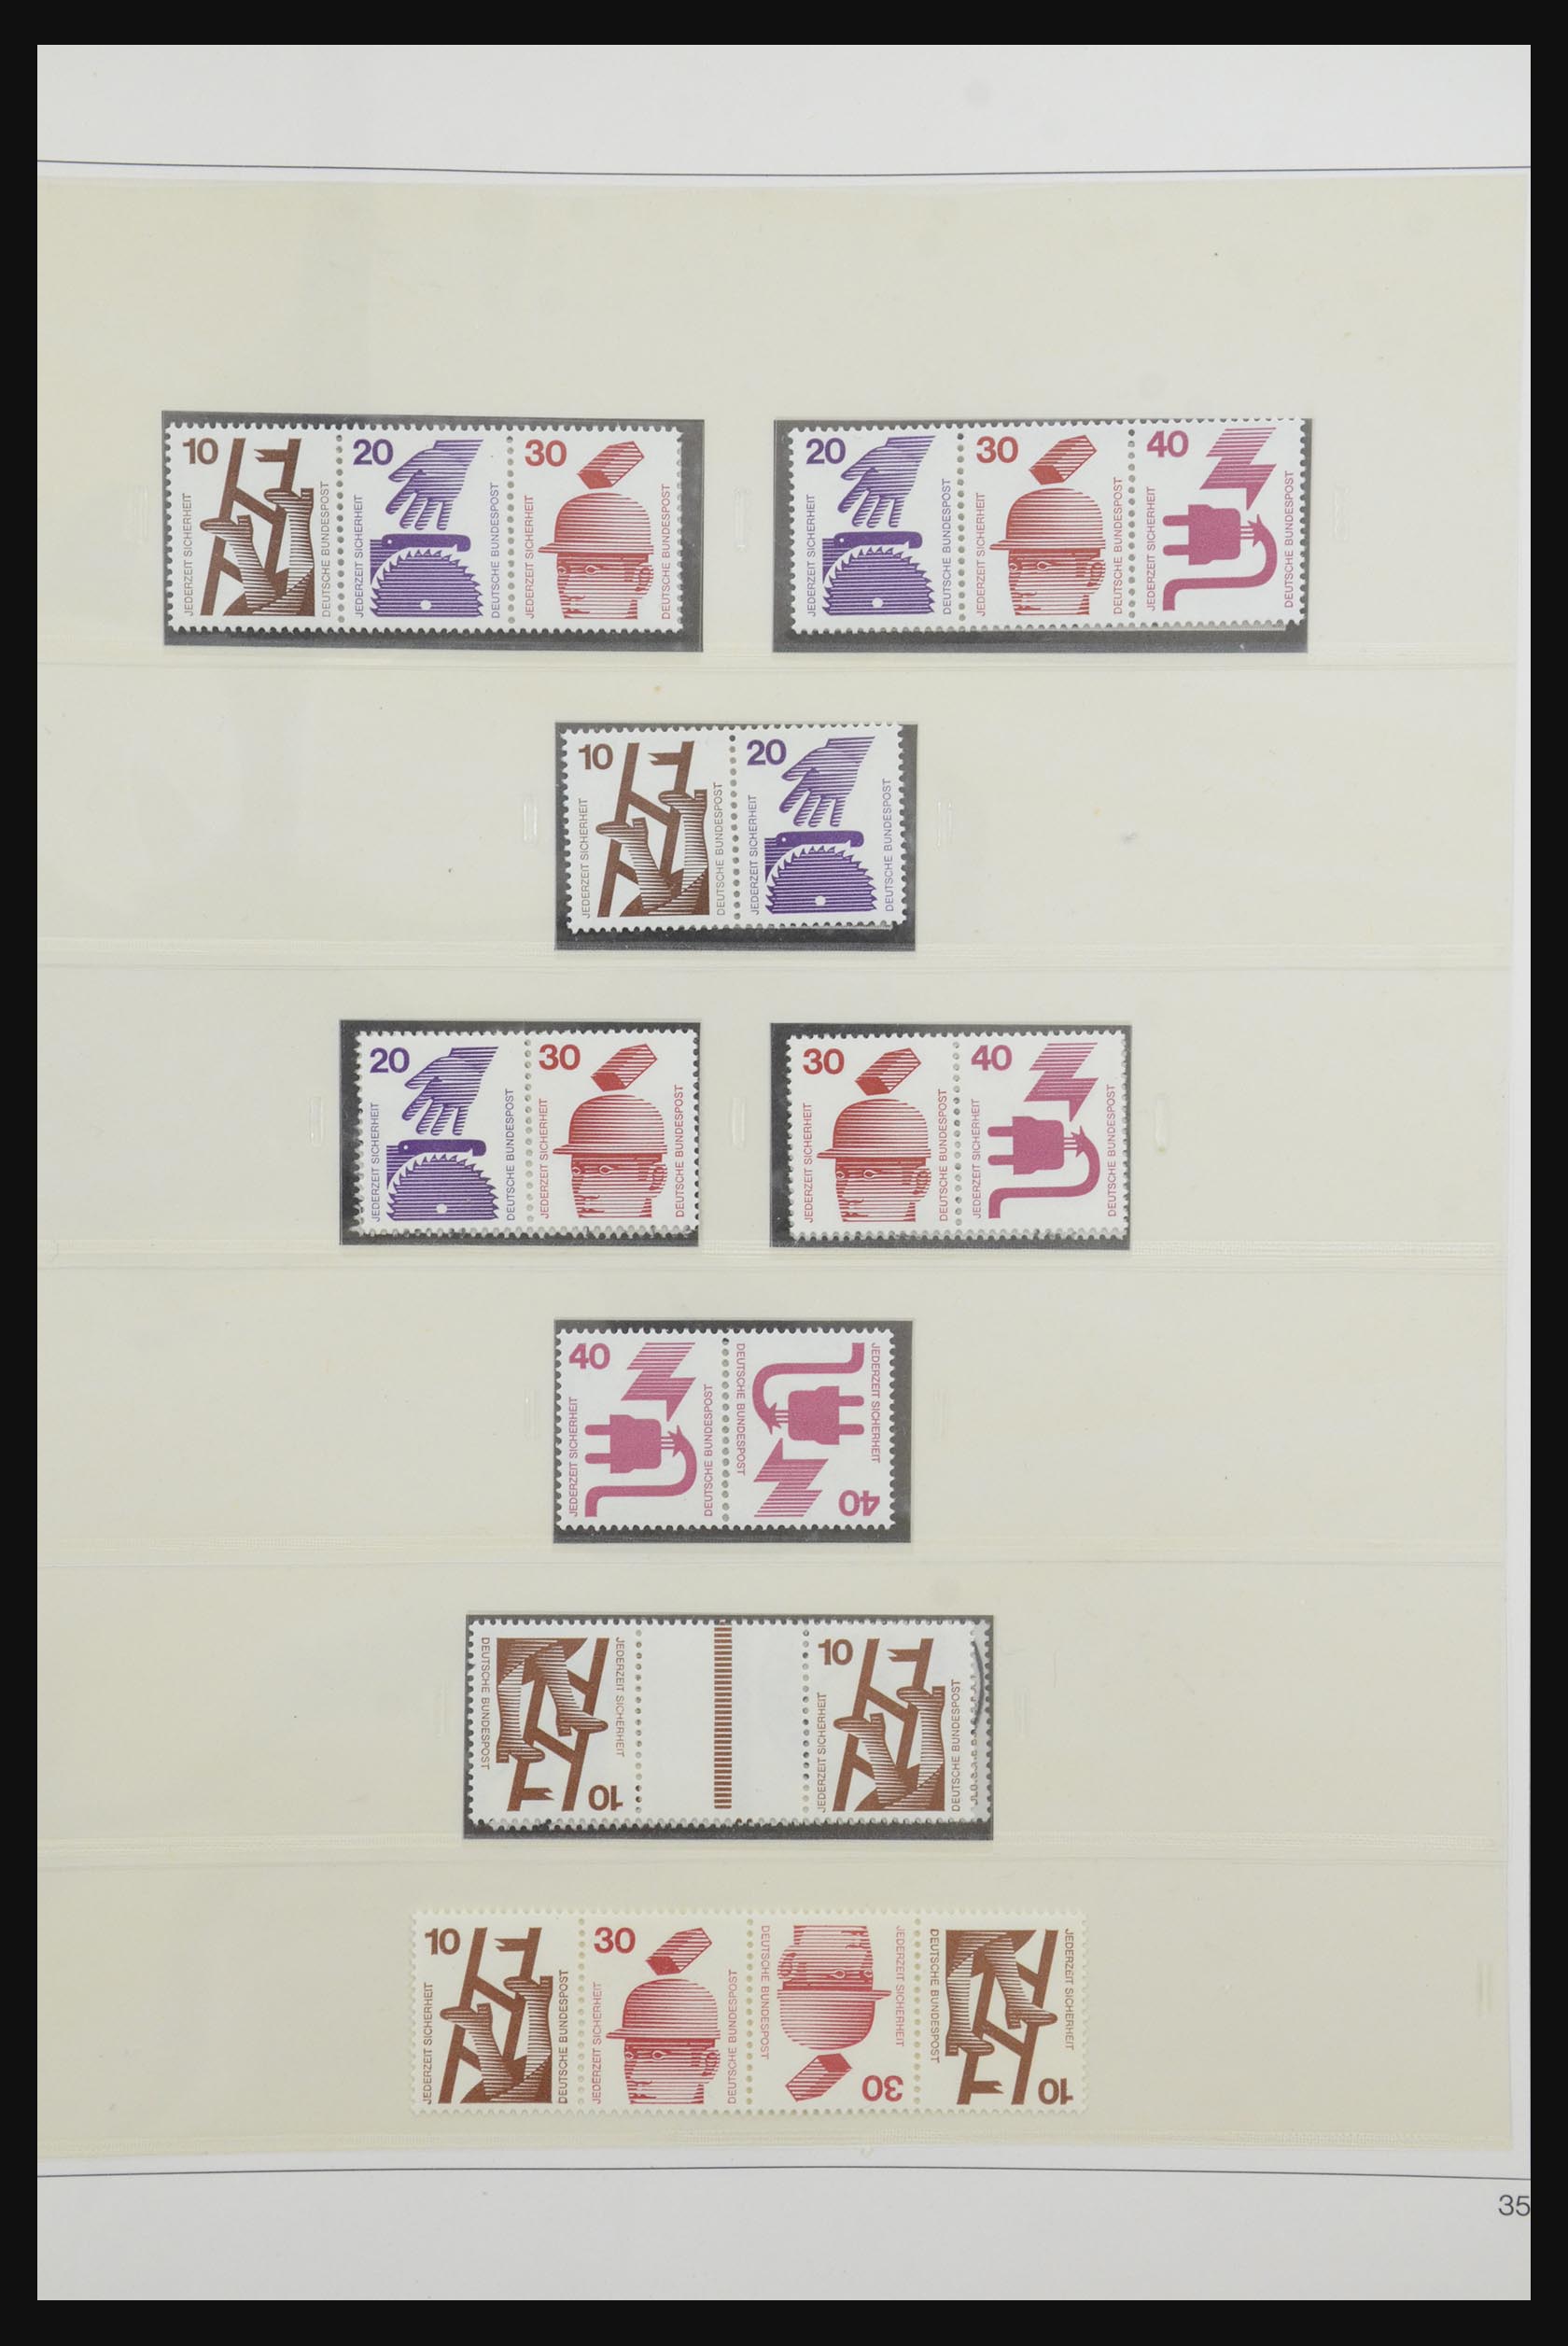 31842 049 - 31842 Bundespost combinations 1951-2003.